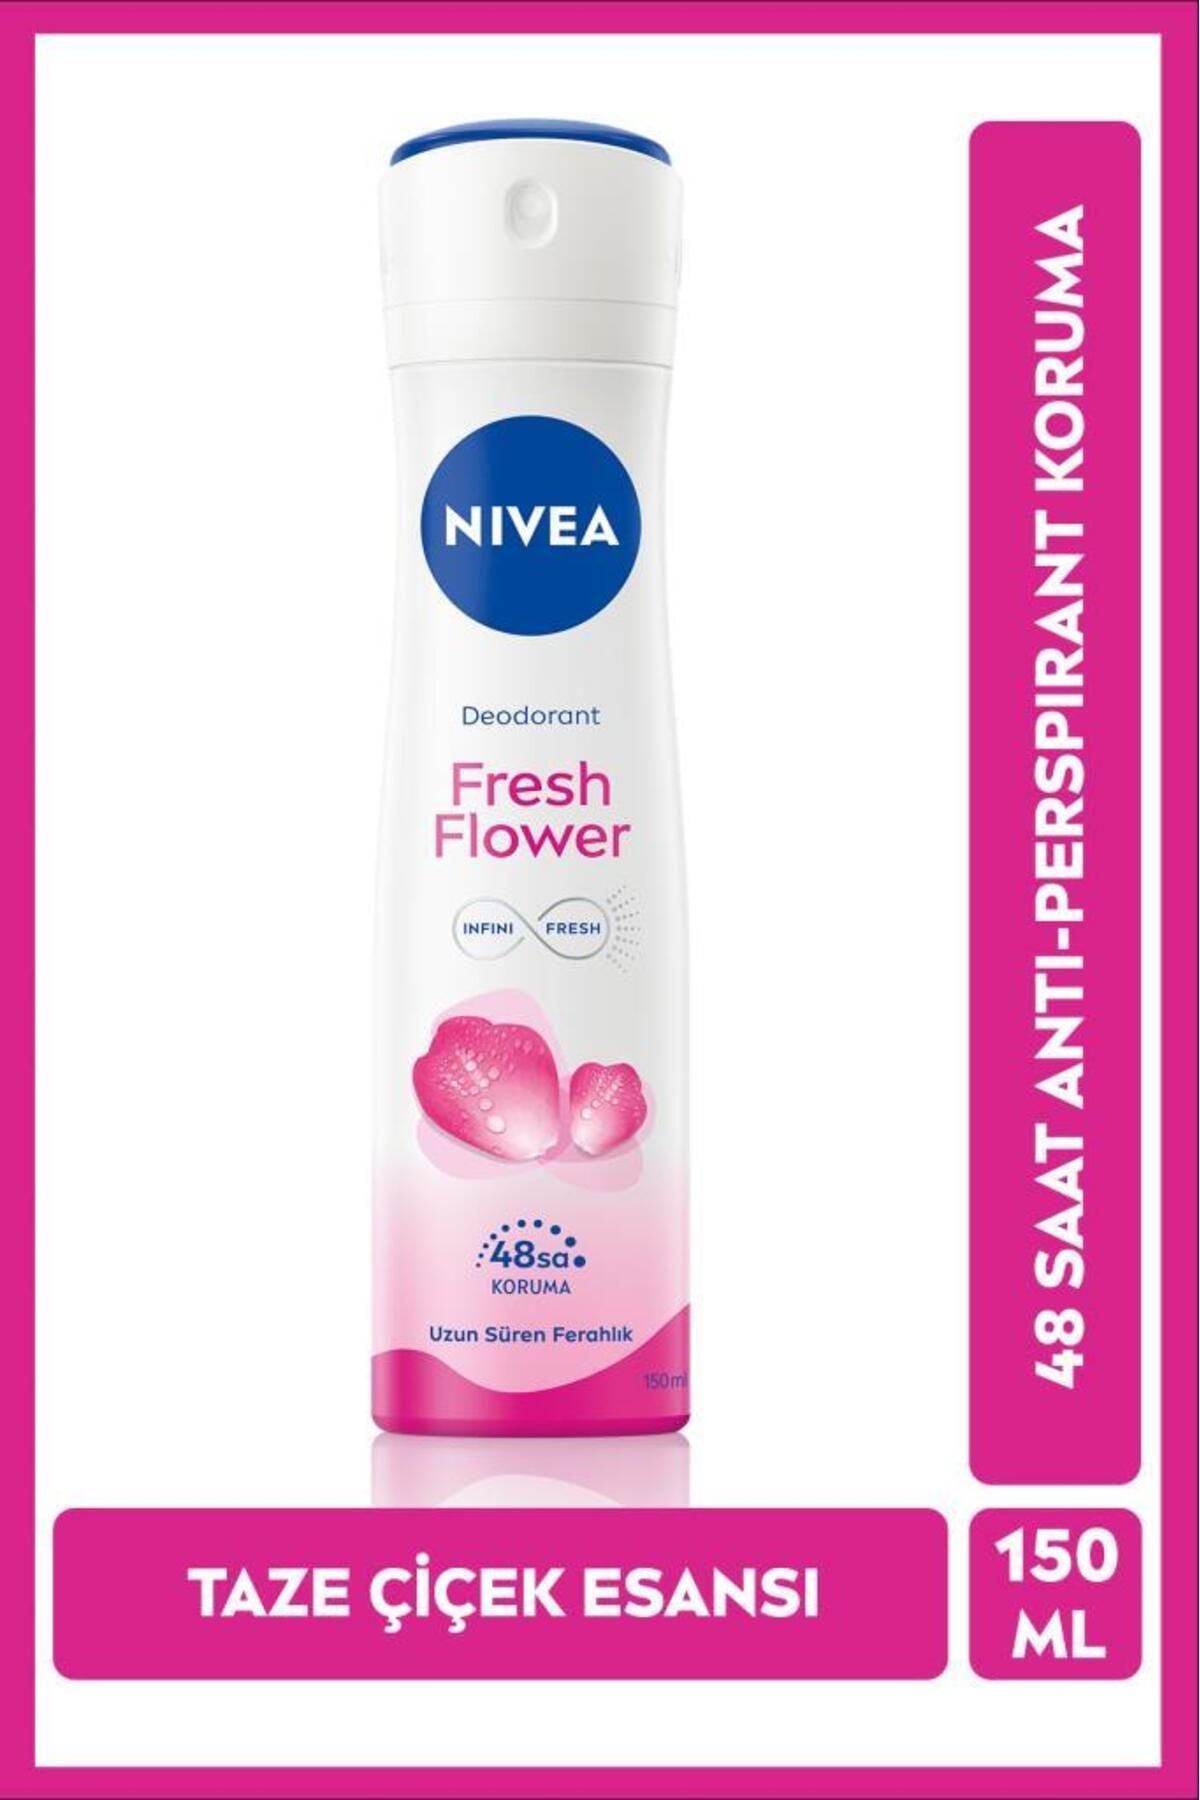 NIVEA Kadın Sprey Deodorant Fresh Flower 150ml, Ter Kokusuna Karşı 48 Saat Koruma, Ferah Çiçek Kokusu